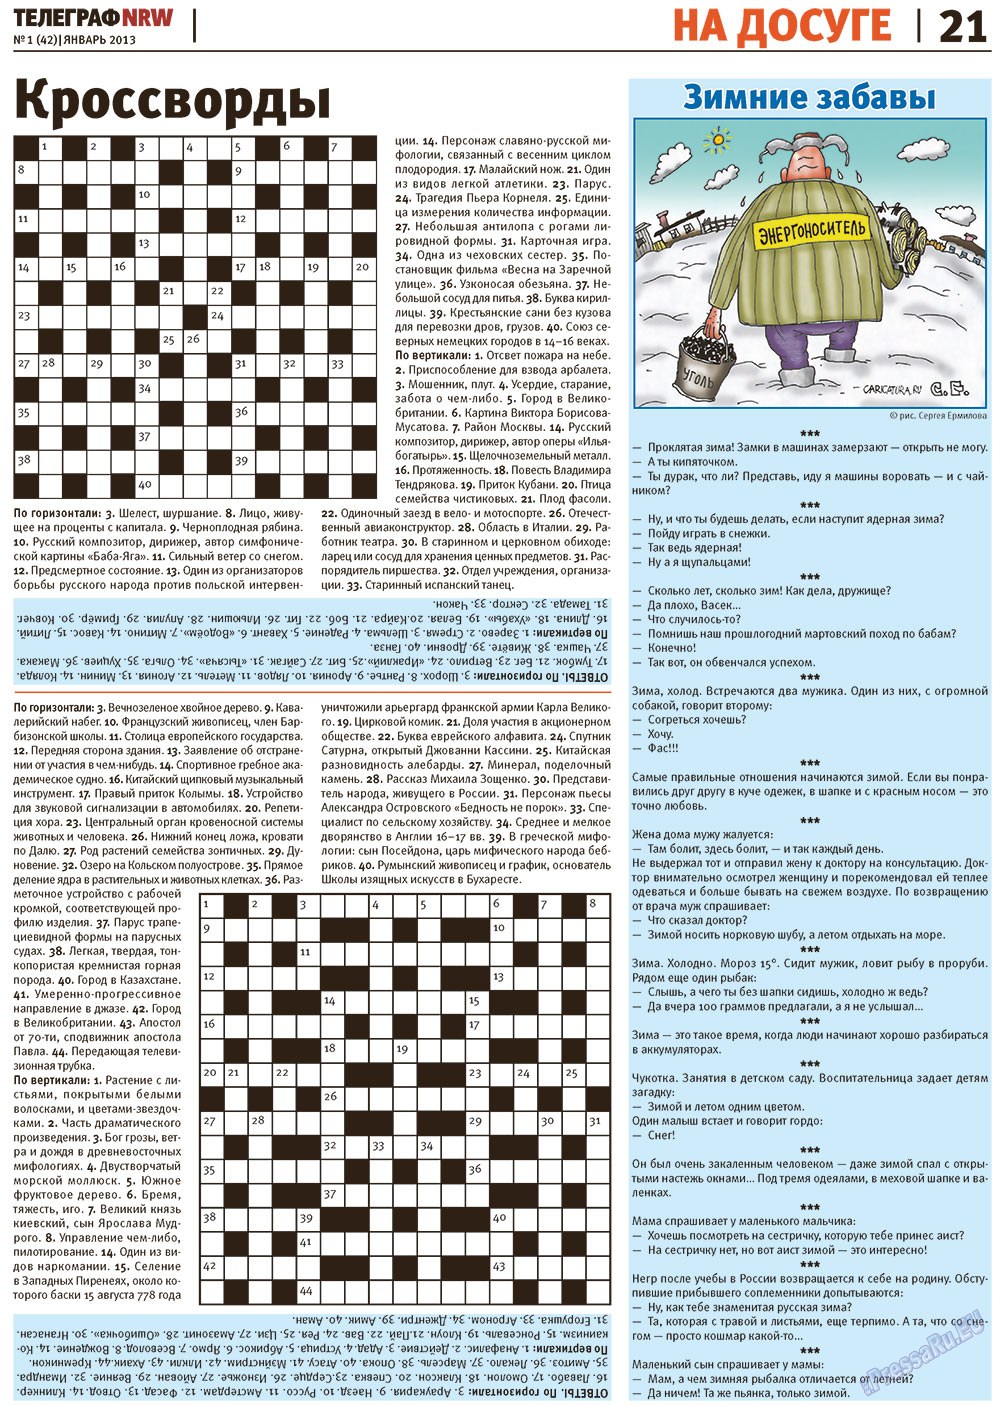 Телеграф NRW (газета). 2013 год, номер 1, стр. 21